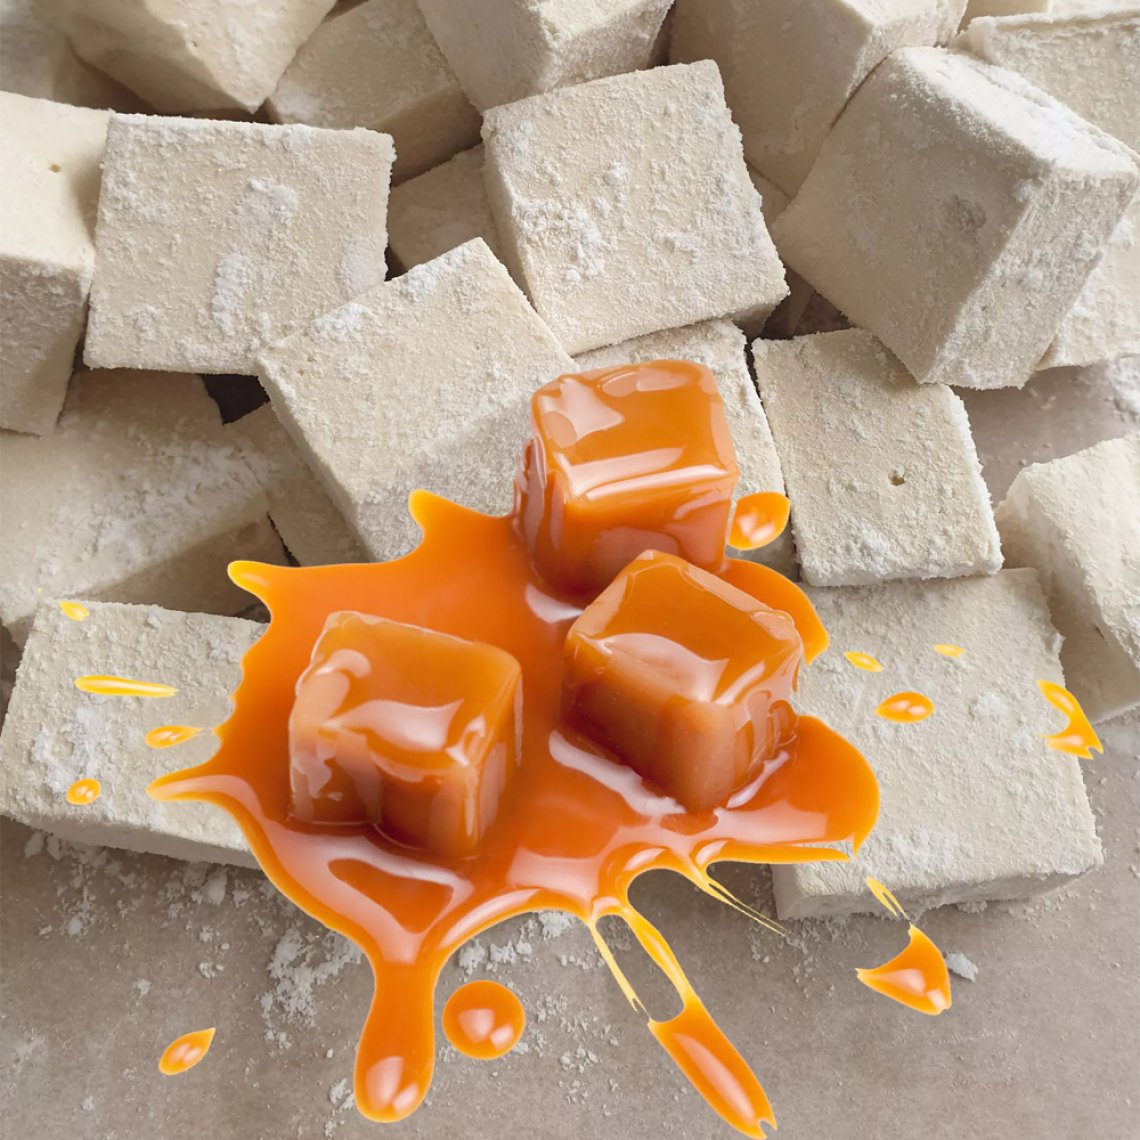 Guimauves Artisanales - Saveur Caramel Beurre Salé - Confiserie Papo